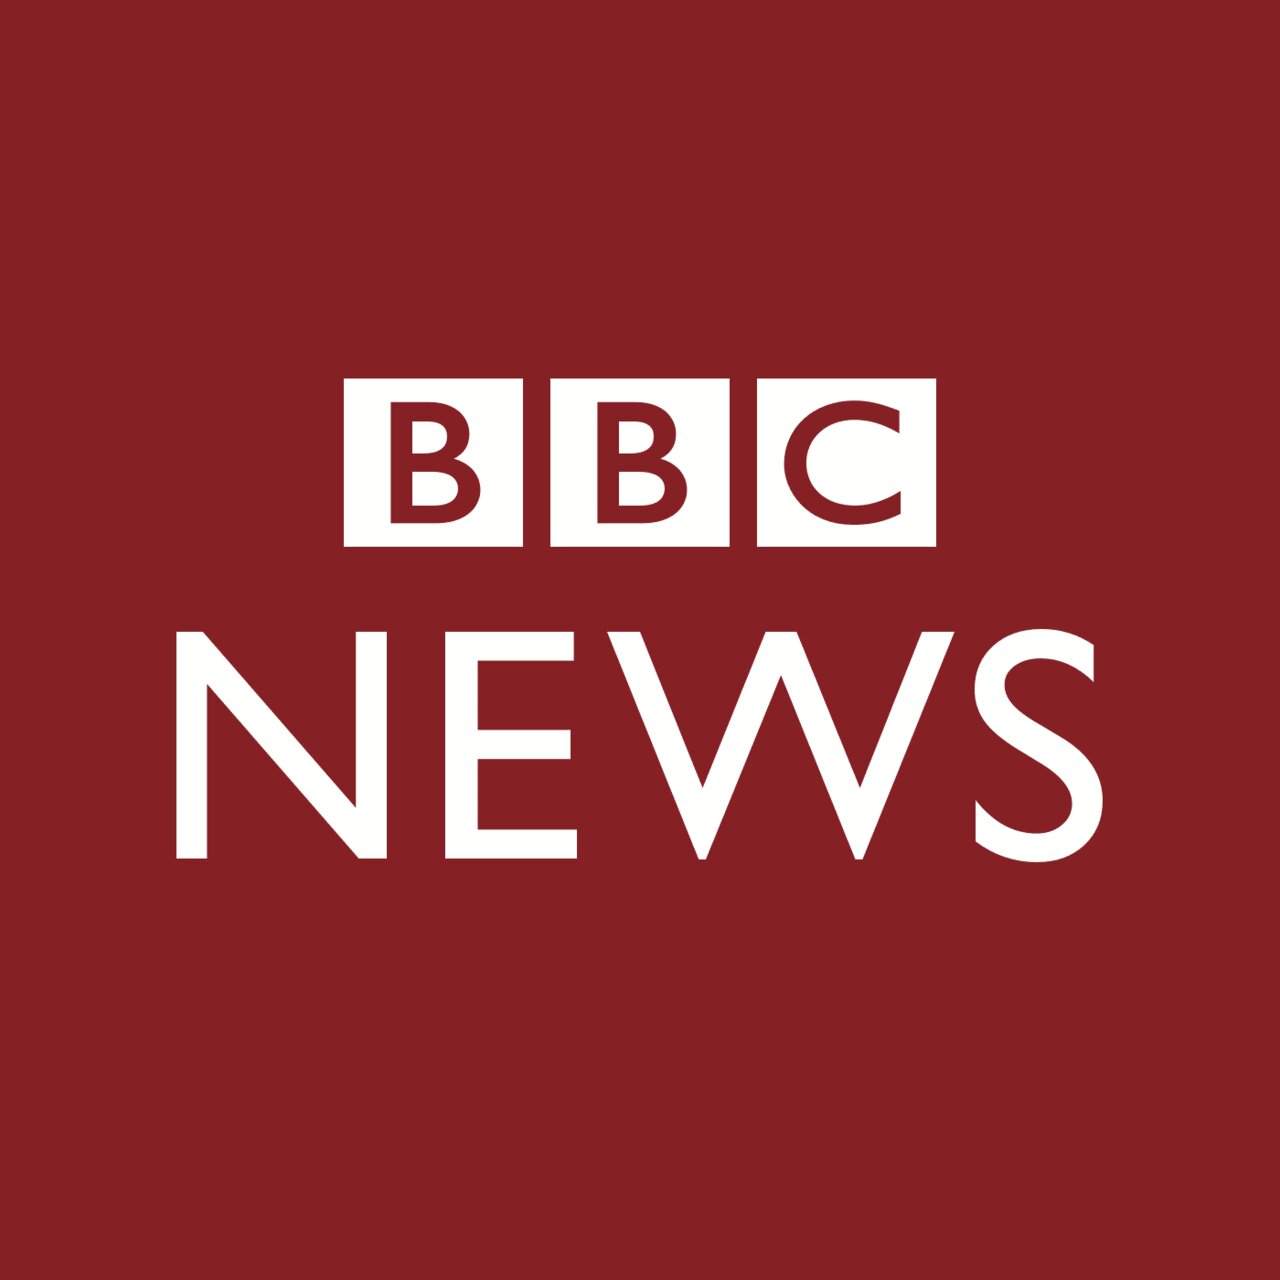 گزارش BBC در باره نیکا شاه کرمی تناقض های متعدد دارد